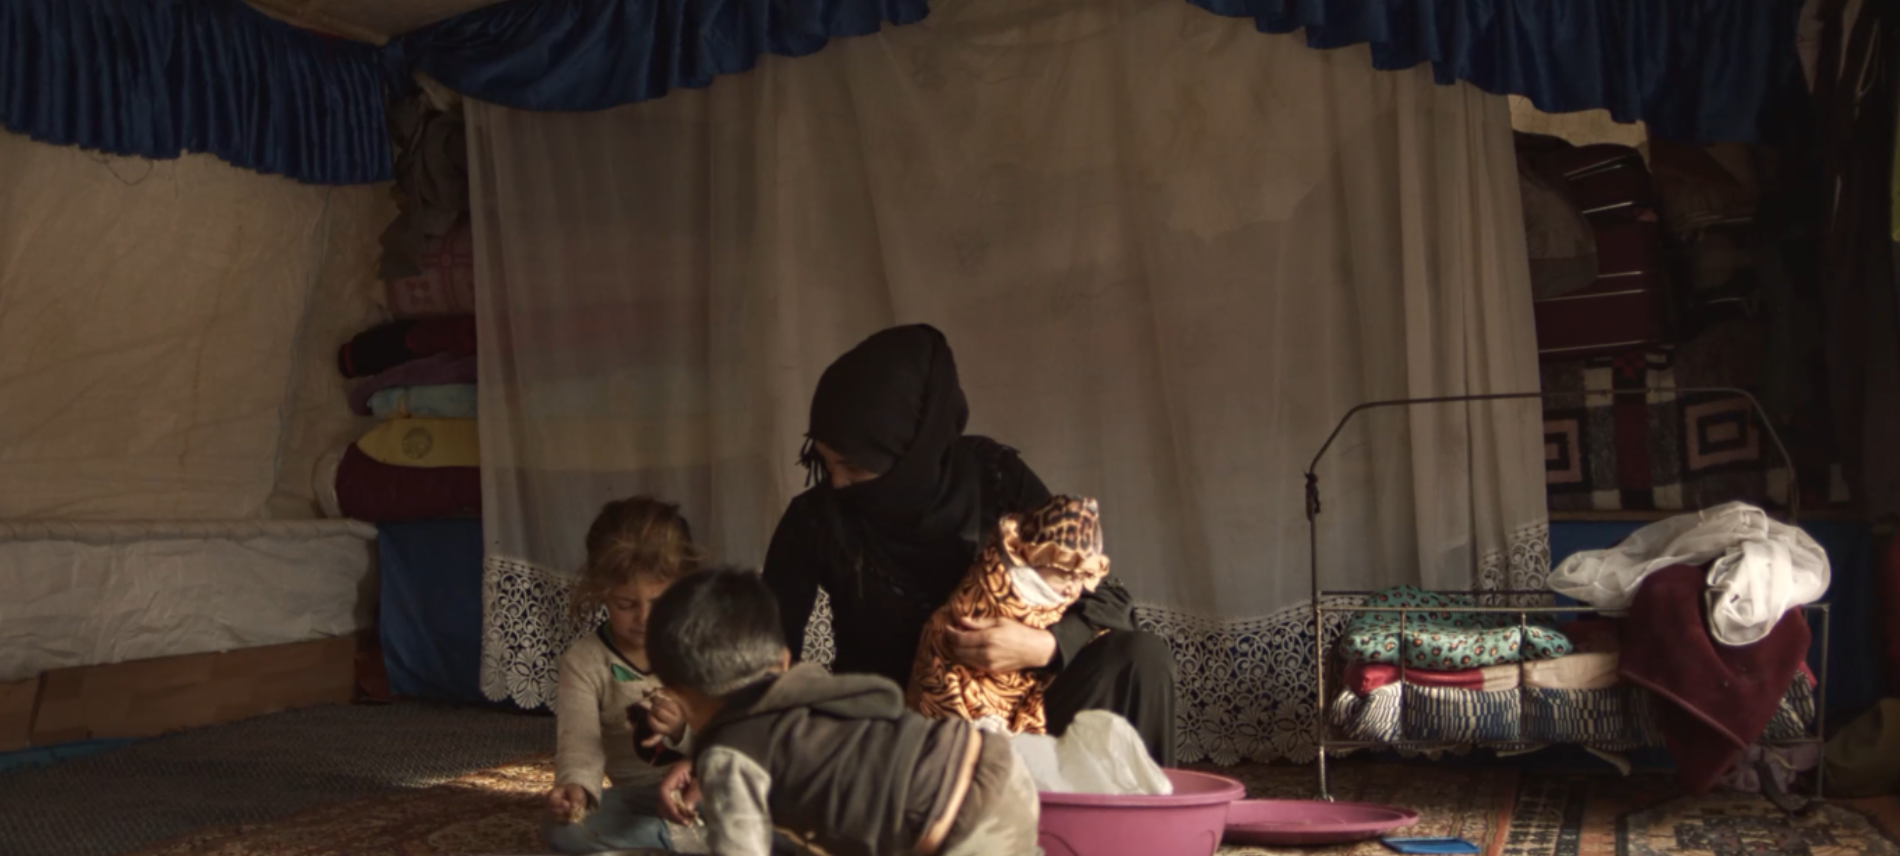 Trotz der eisigen Kälte müssen die geflüchteten Menschen in Syrien in provisorischen Zelten leben.